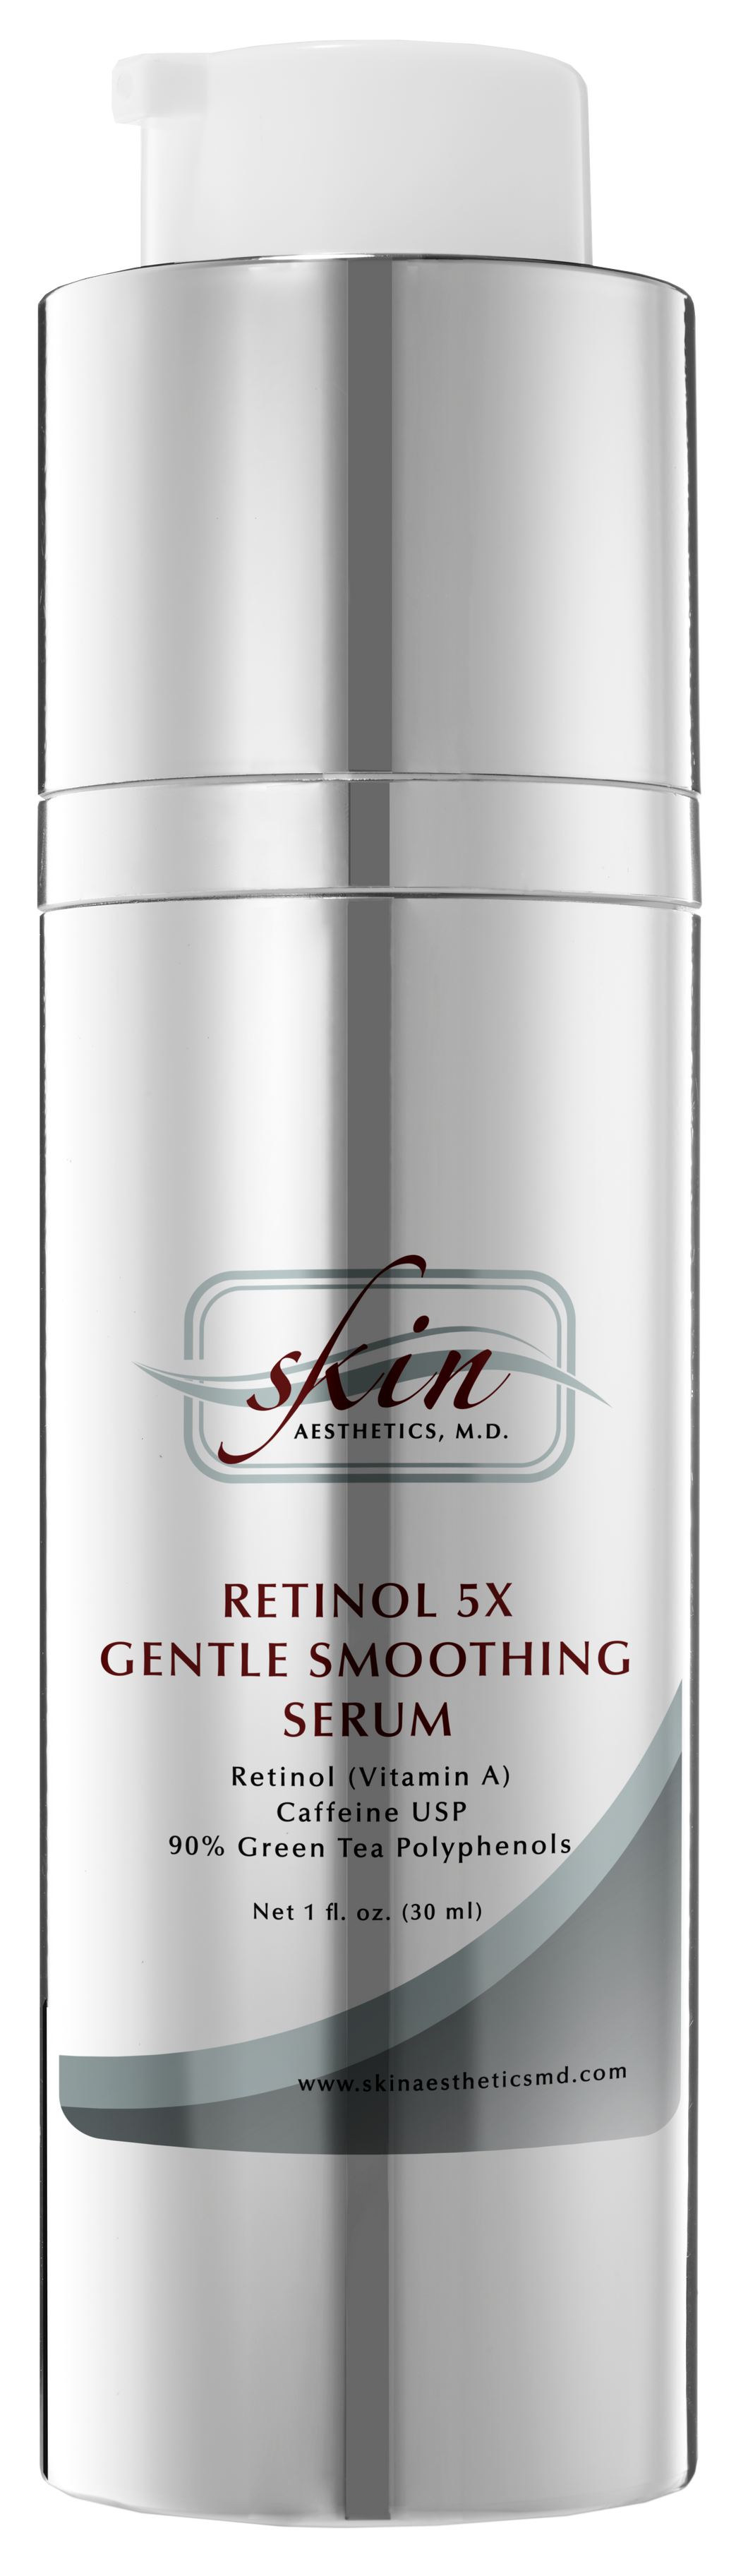 Retinol 5x Gentle Smoothing Serum